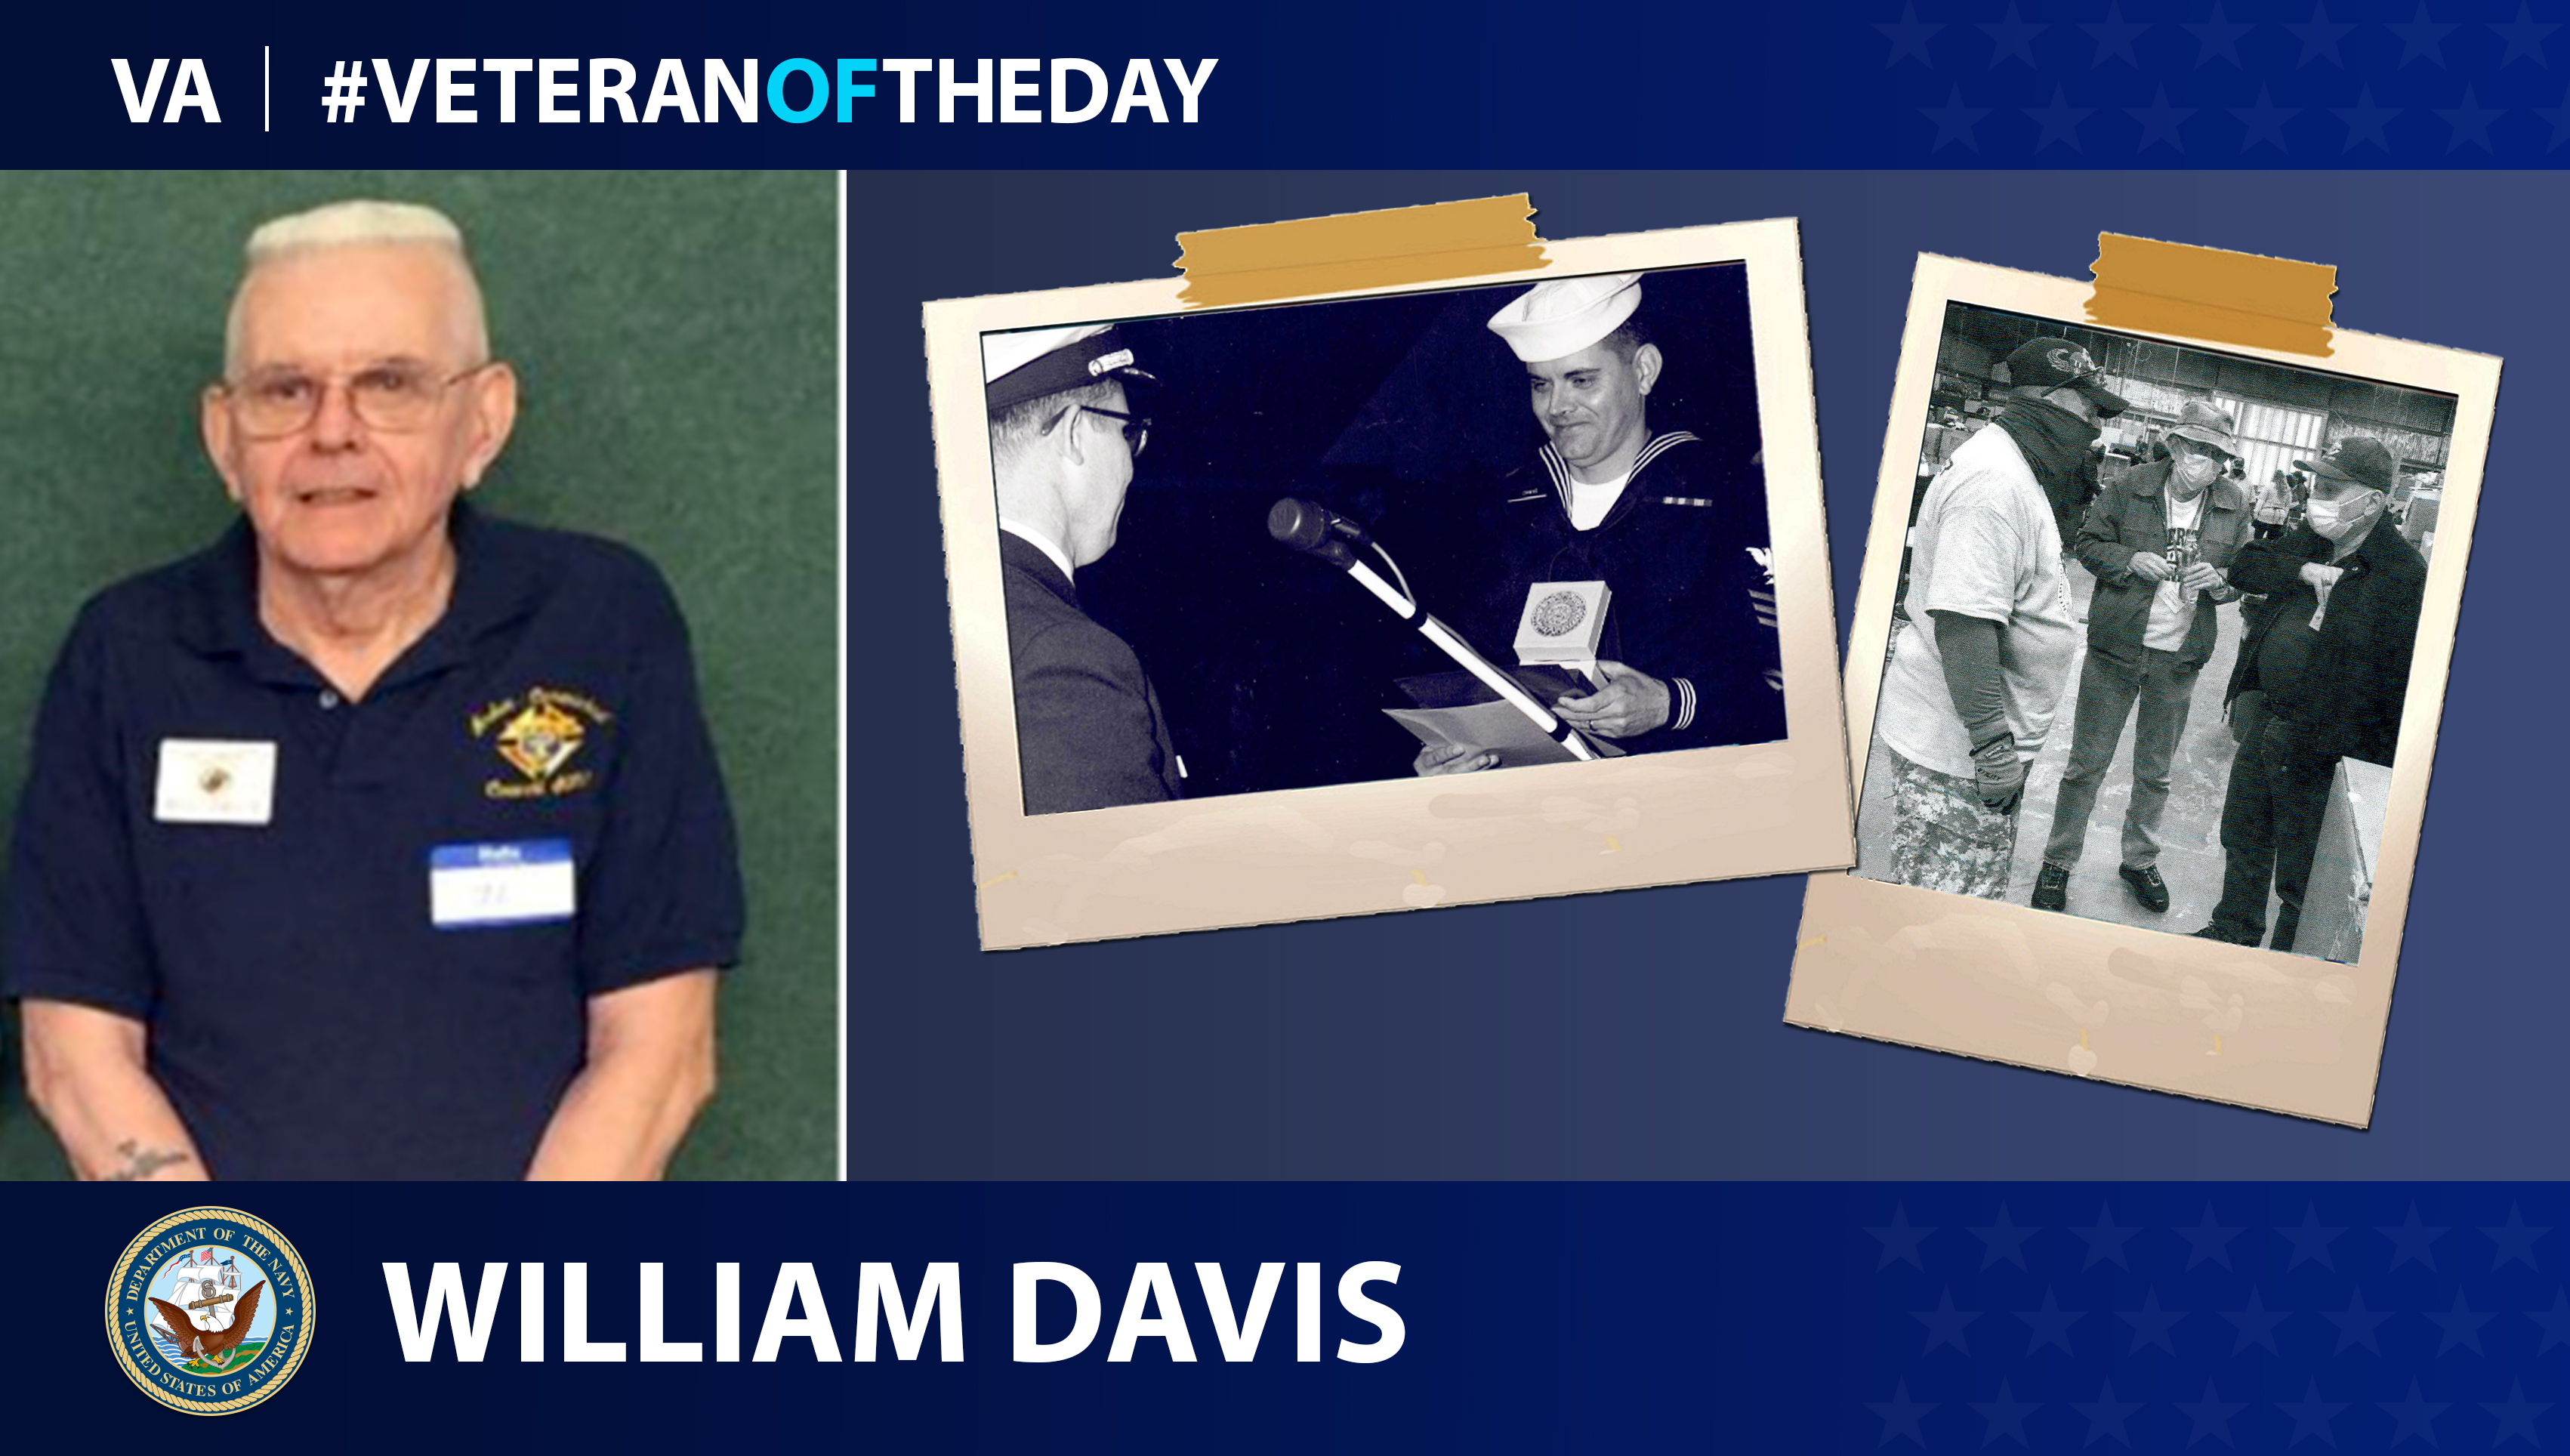 Navy Veteran William Davis is today's Veteran of the day.